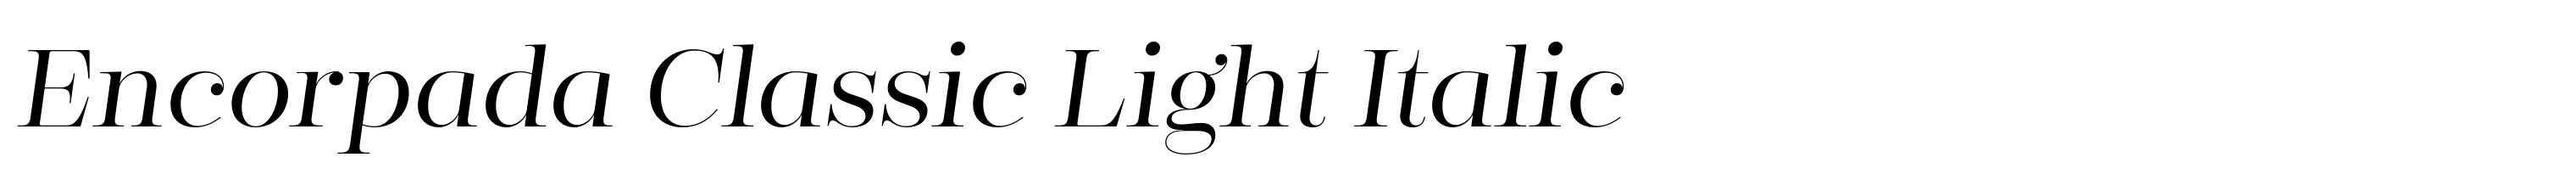 Encorpada Classic Light Italic